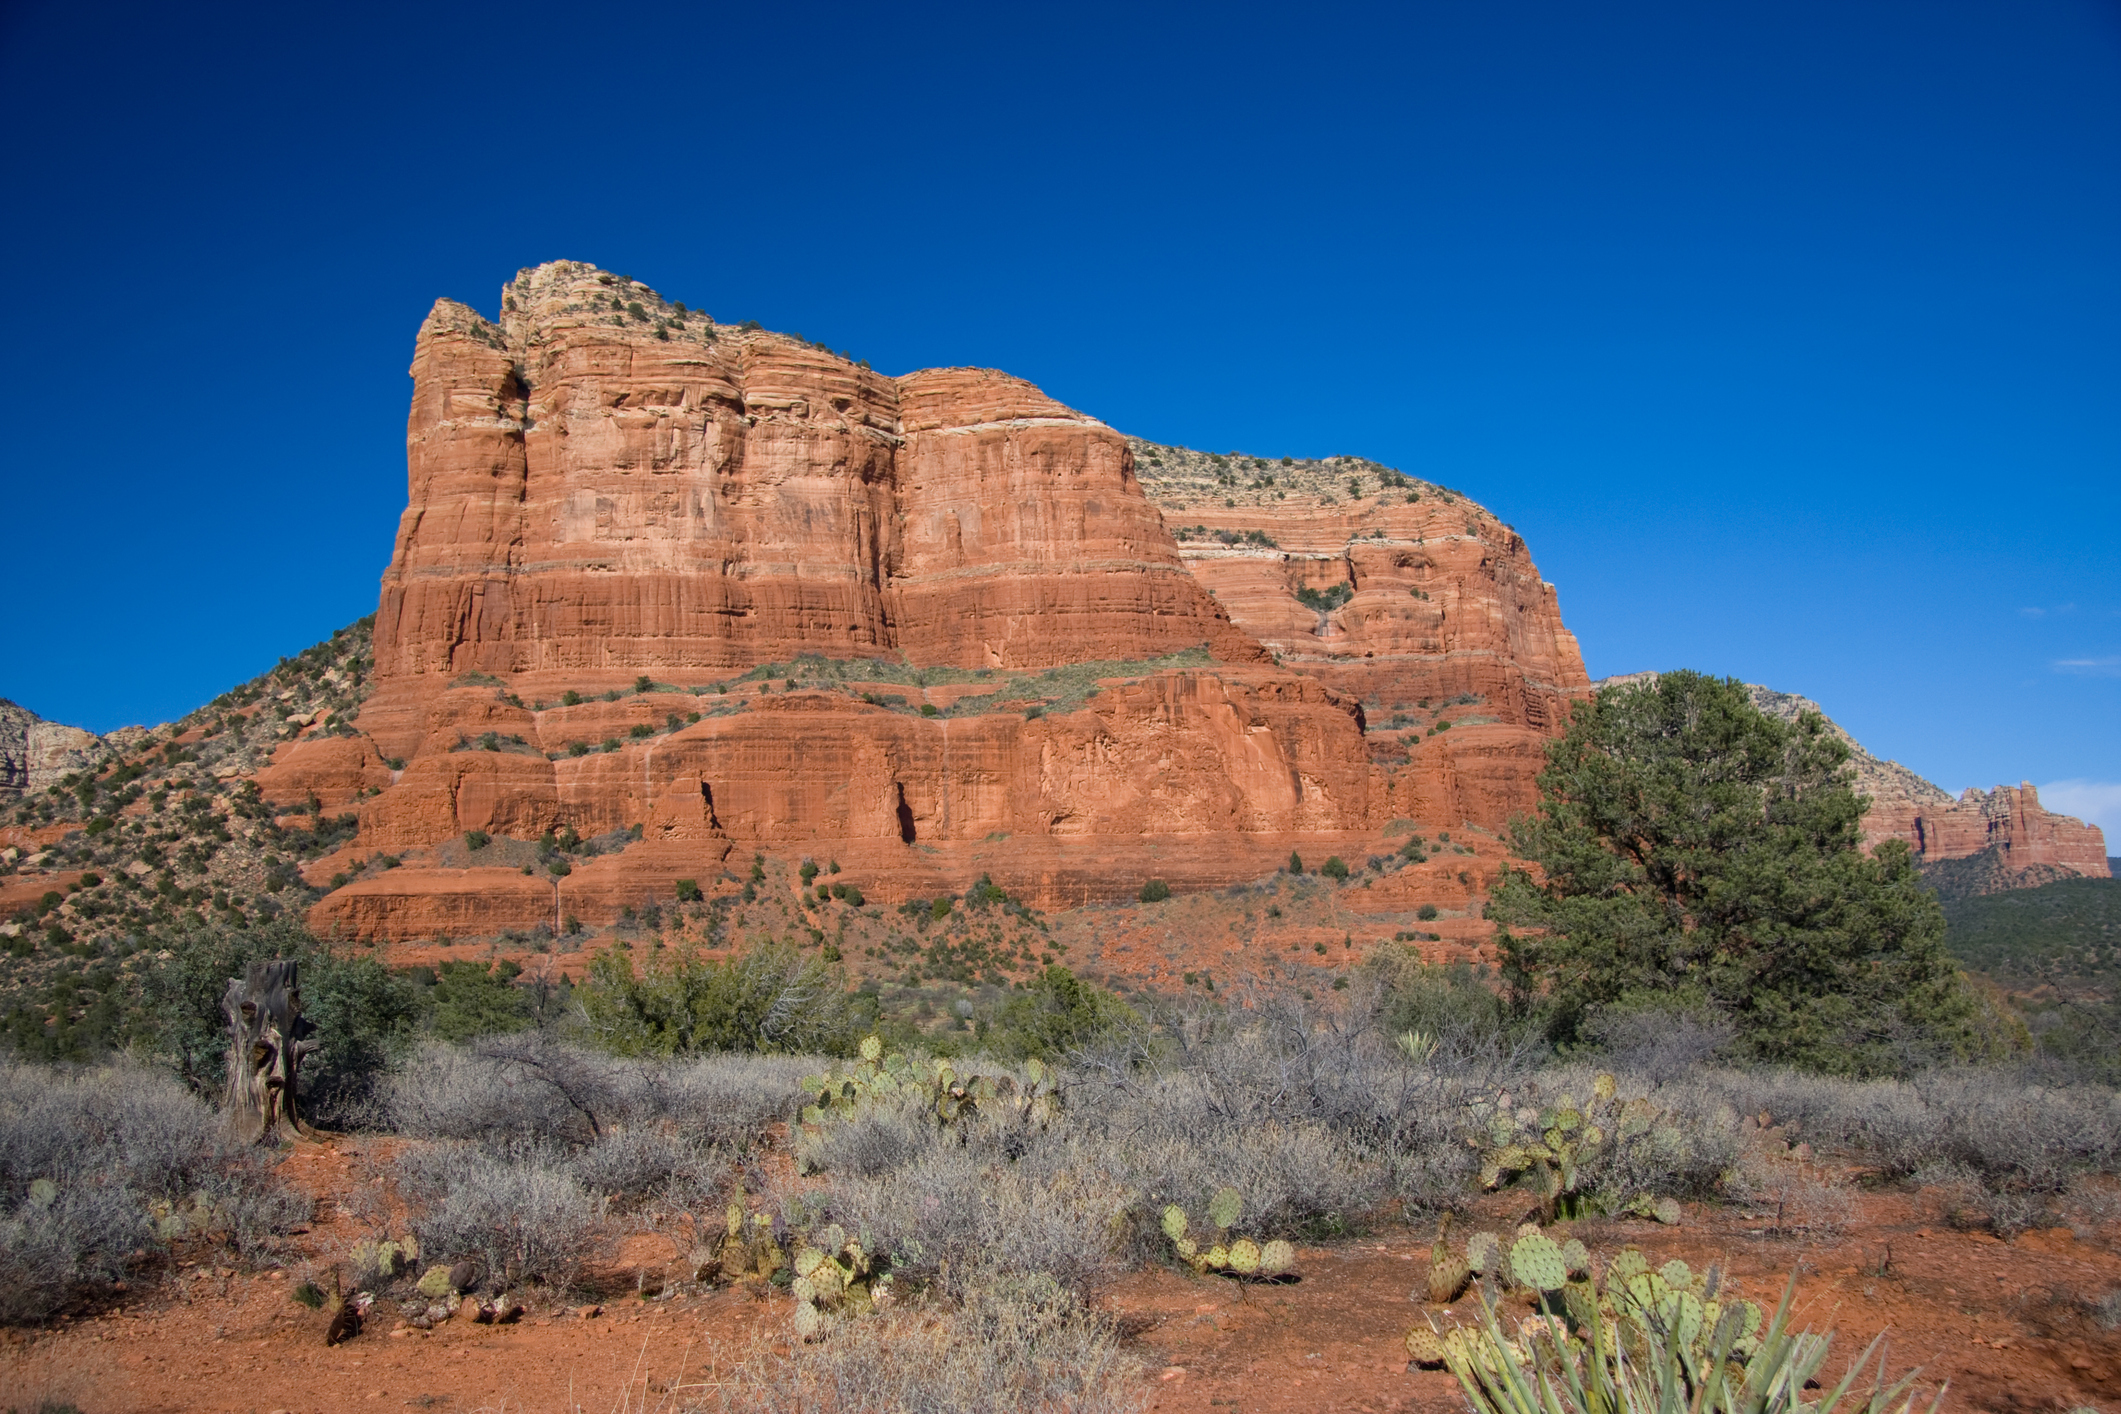 A rugged rock butte against a blue desert sky.